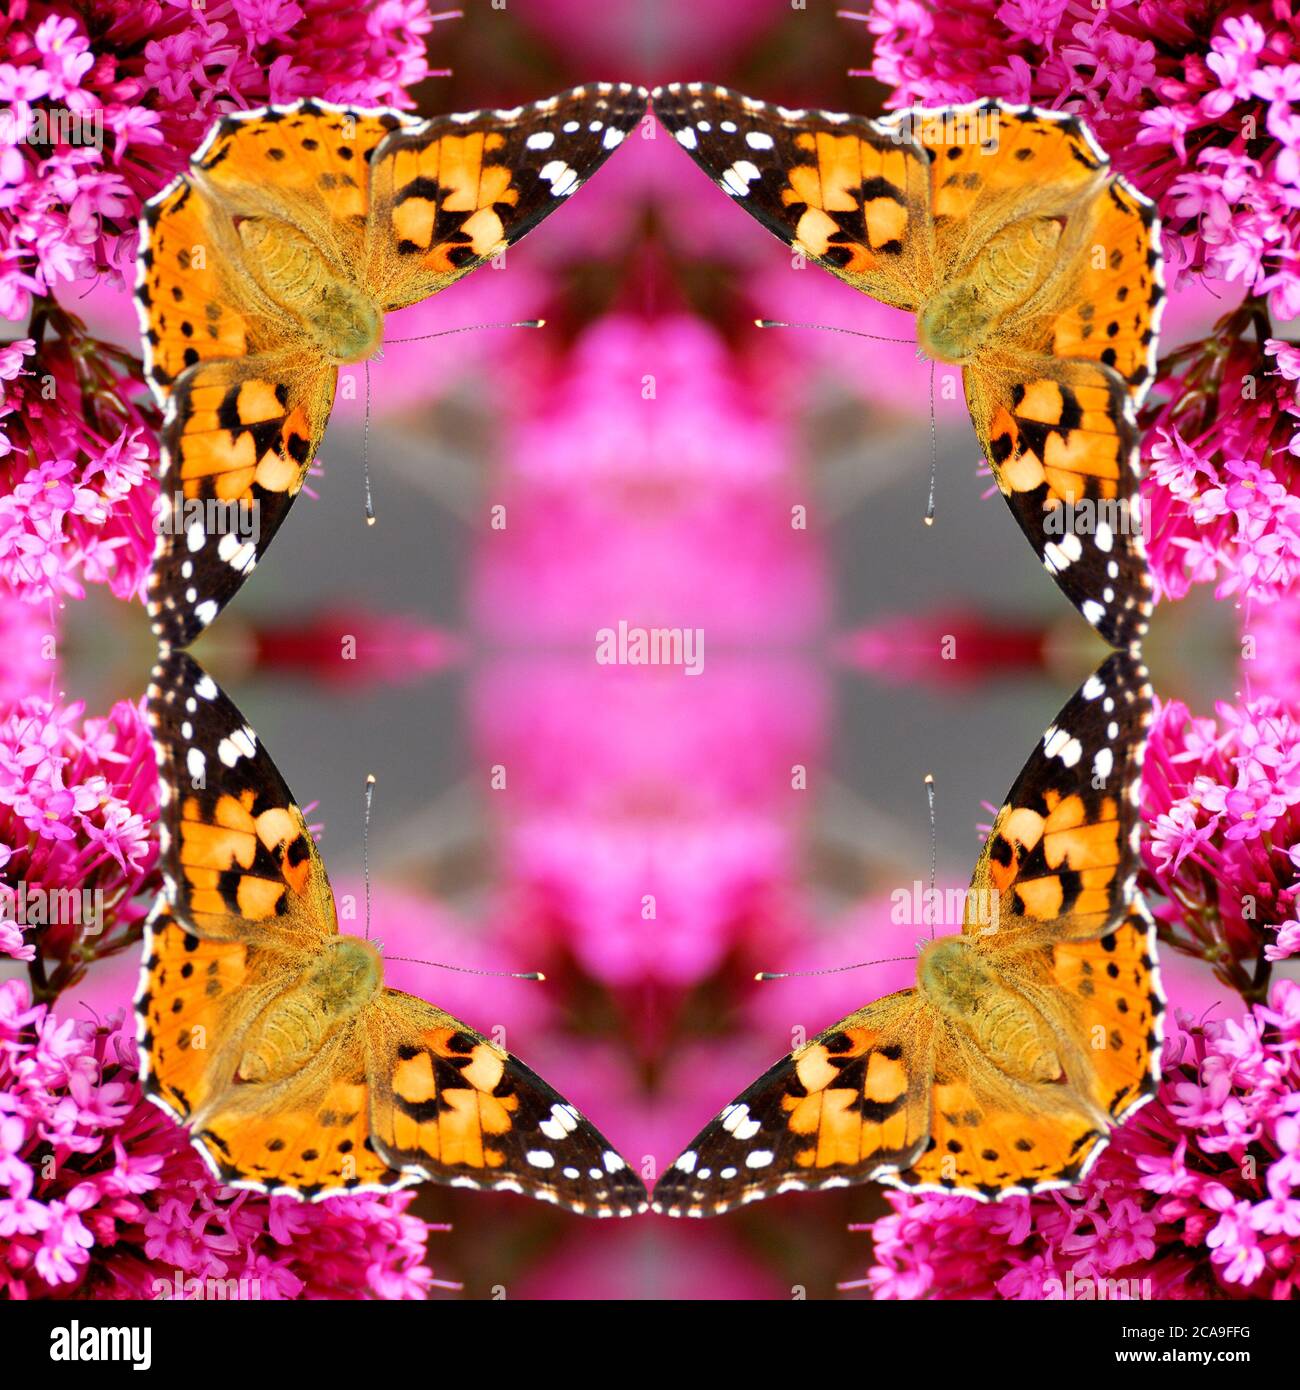 Immagine riflessa digitalmente di una farfalla dipinta (Vanessa Cardui) che si nuote su un fiore viola Foto Stock